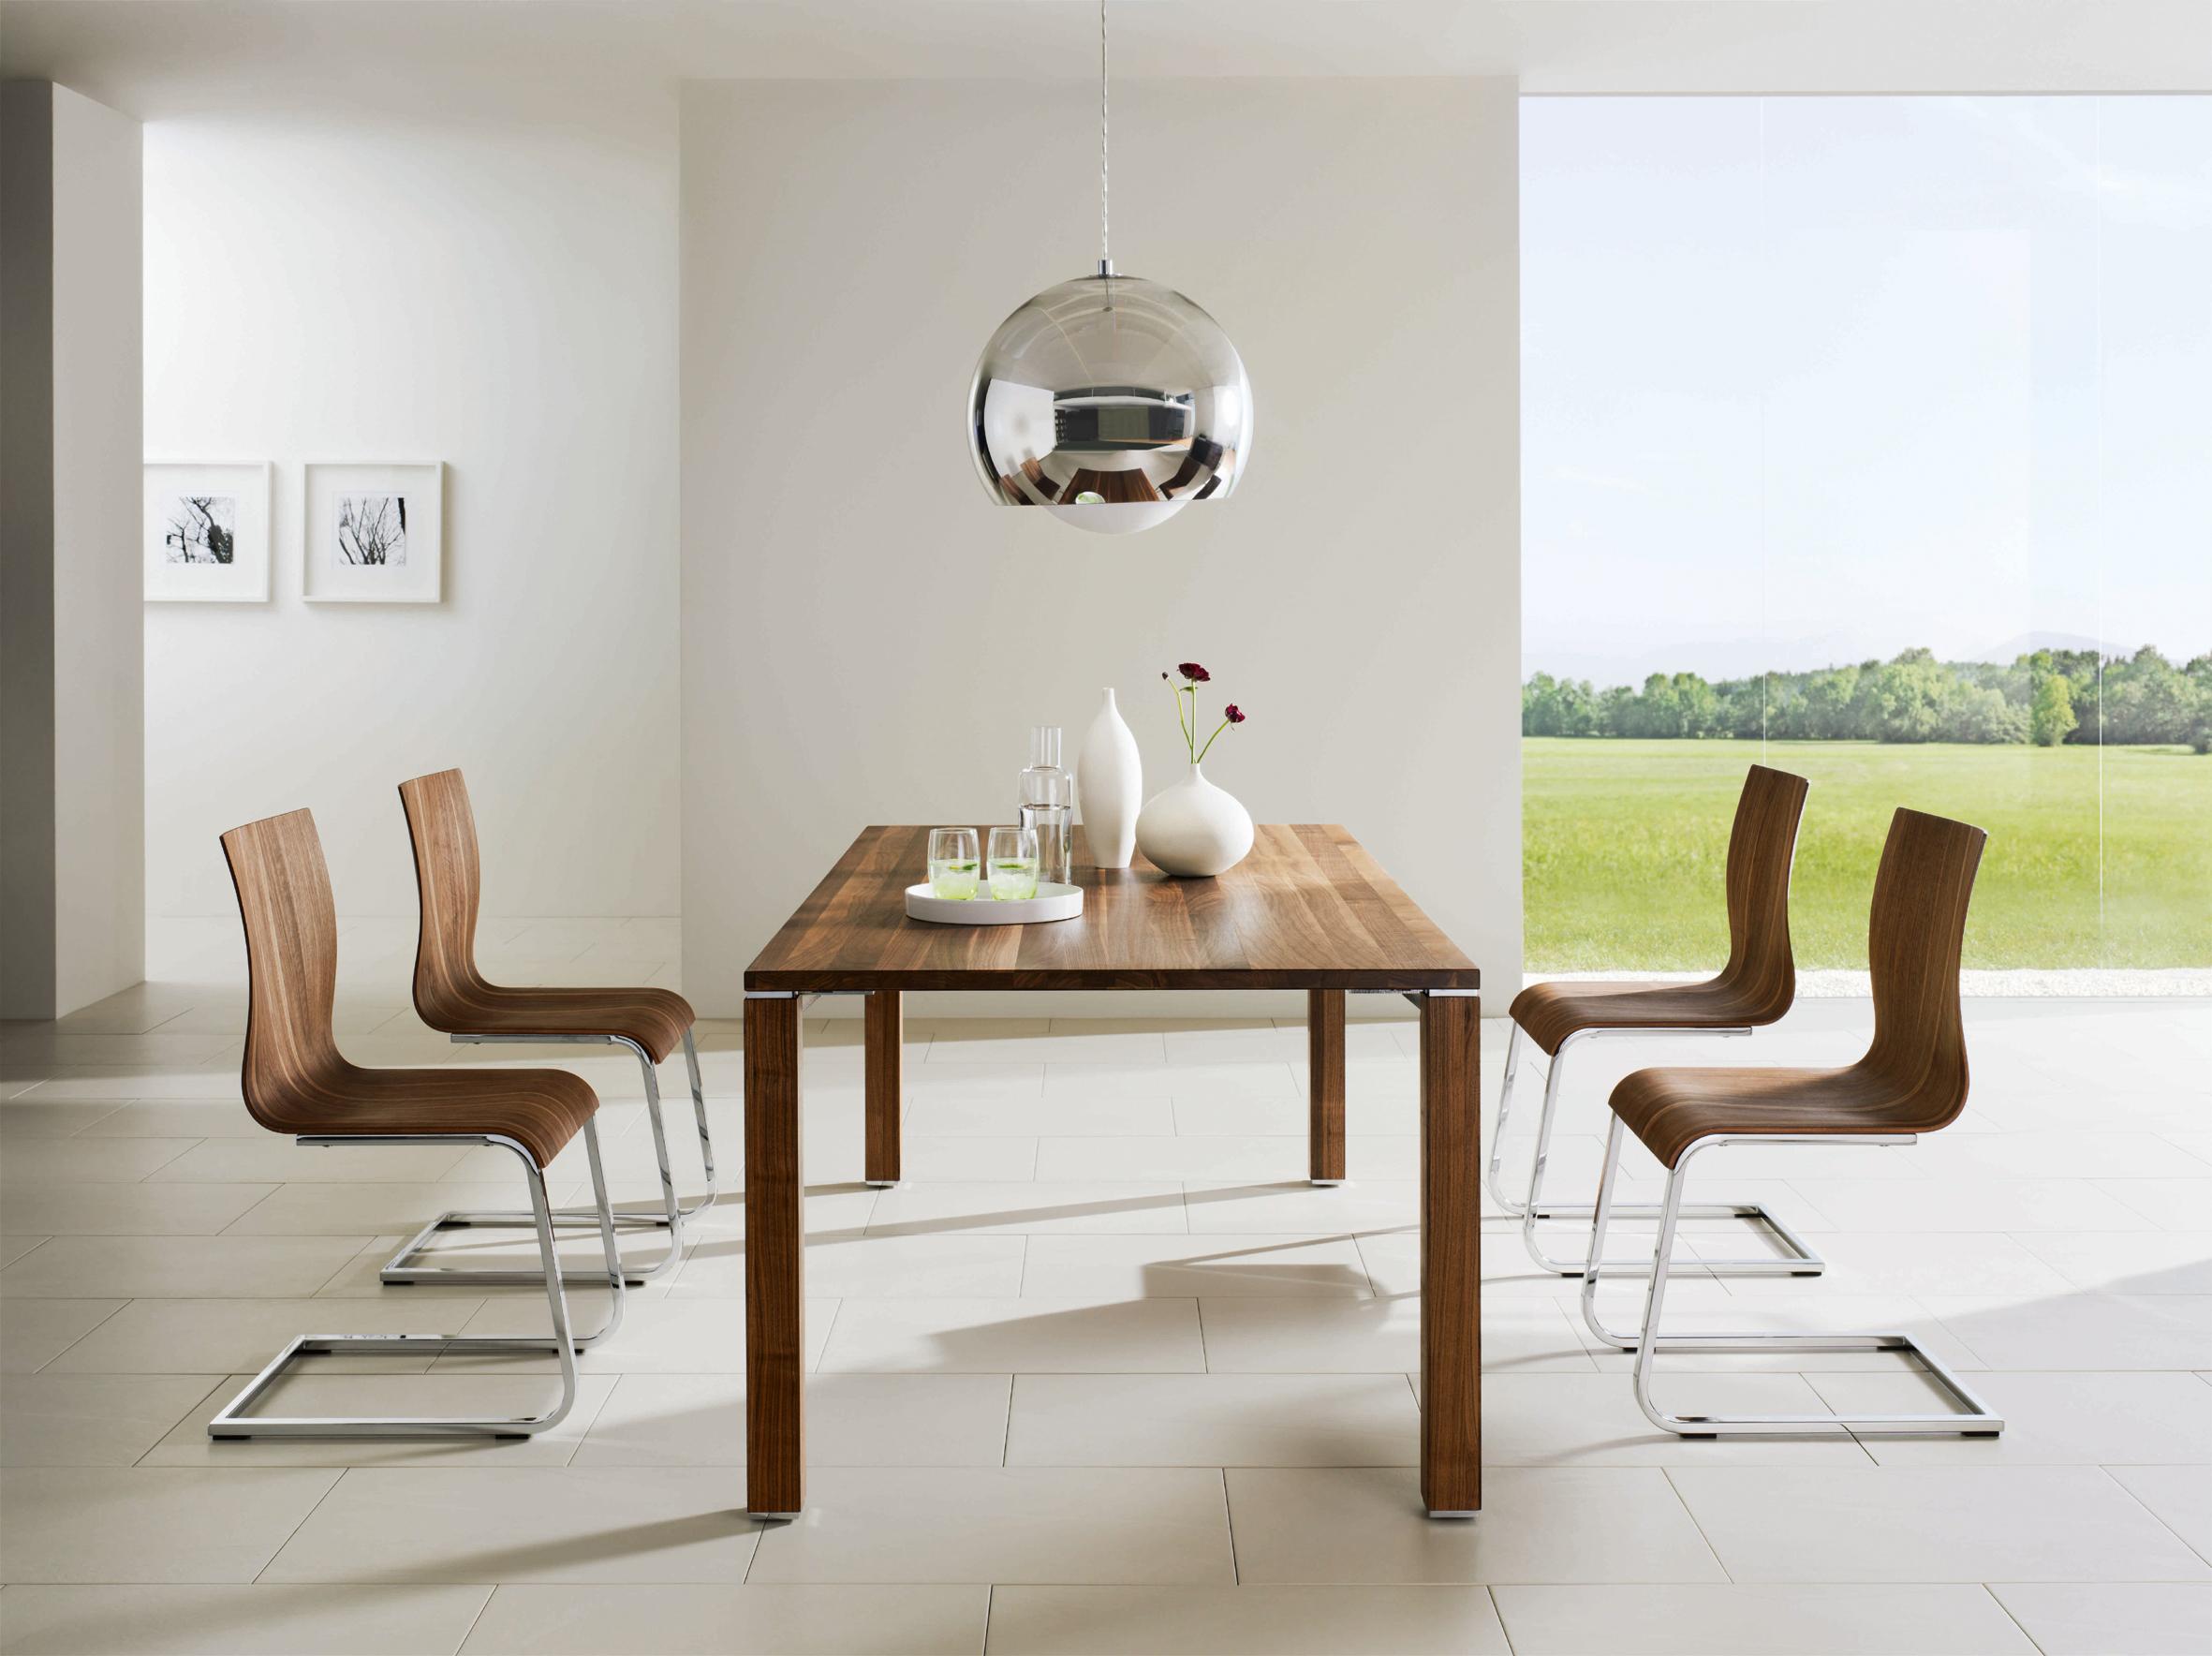 Dieses Bild zeigt einen Tisch und vier Stühle aus Holz